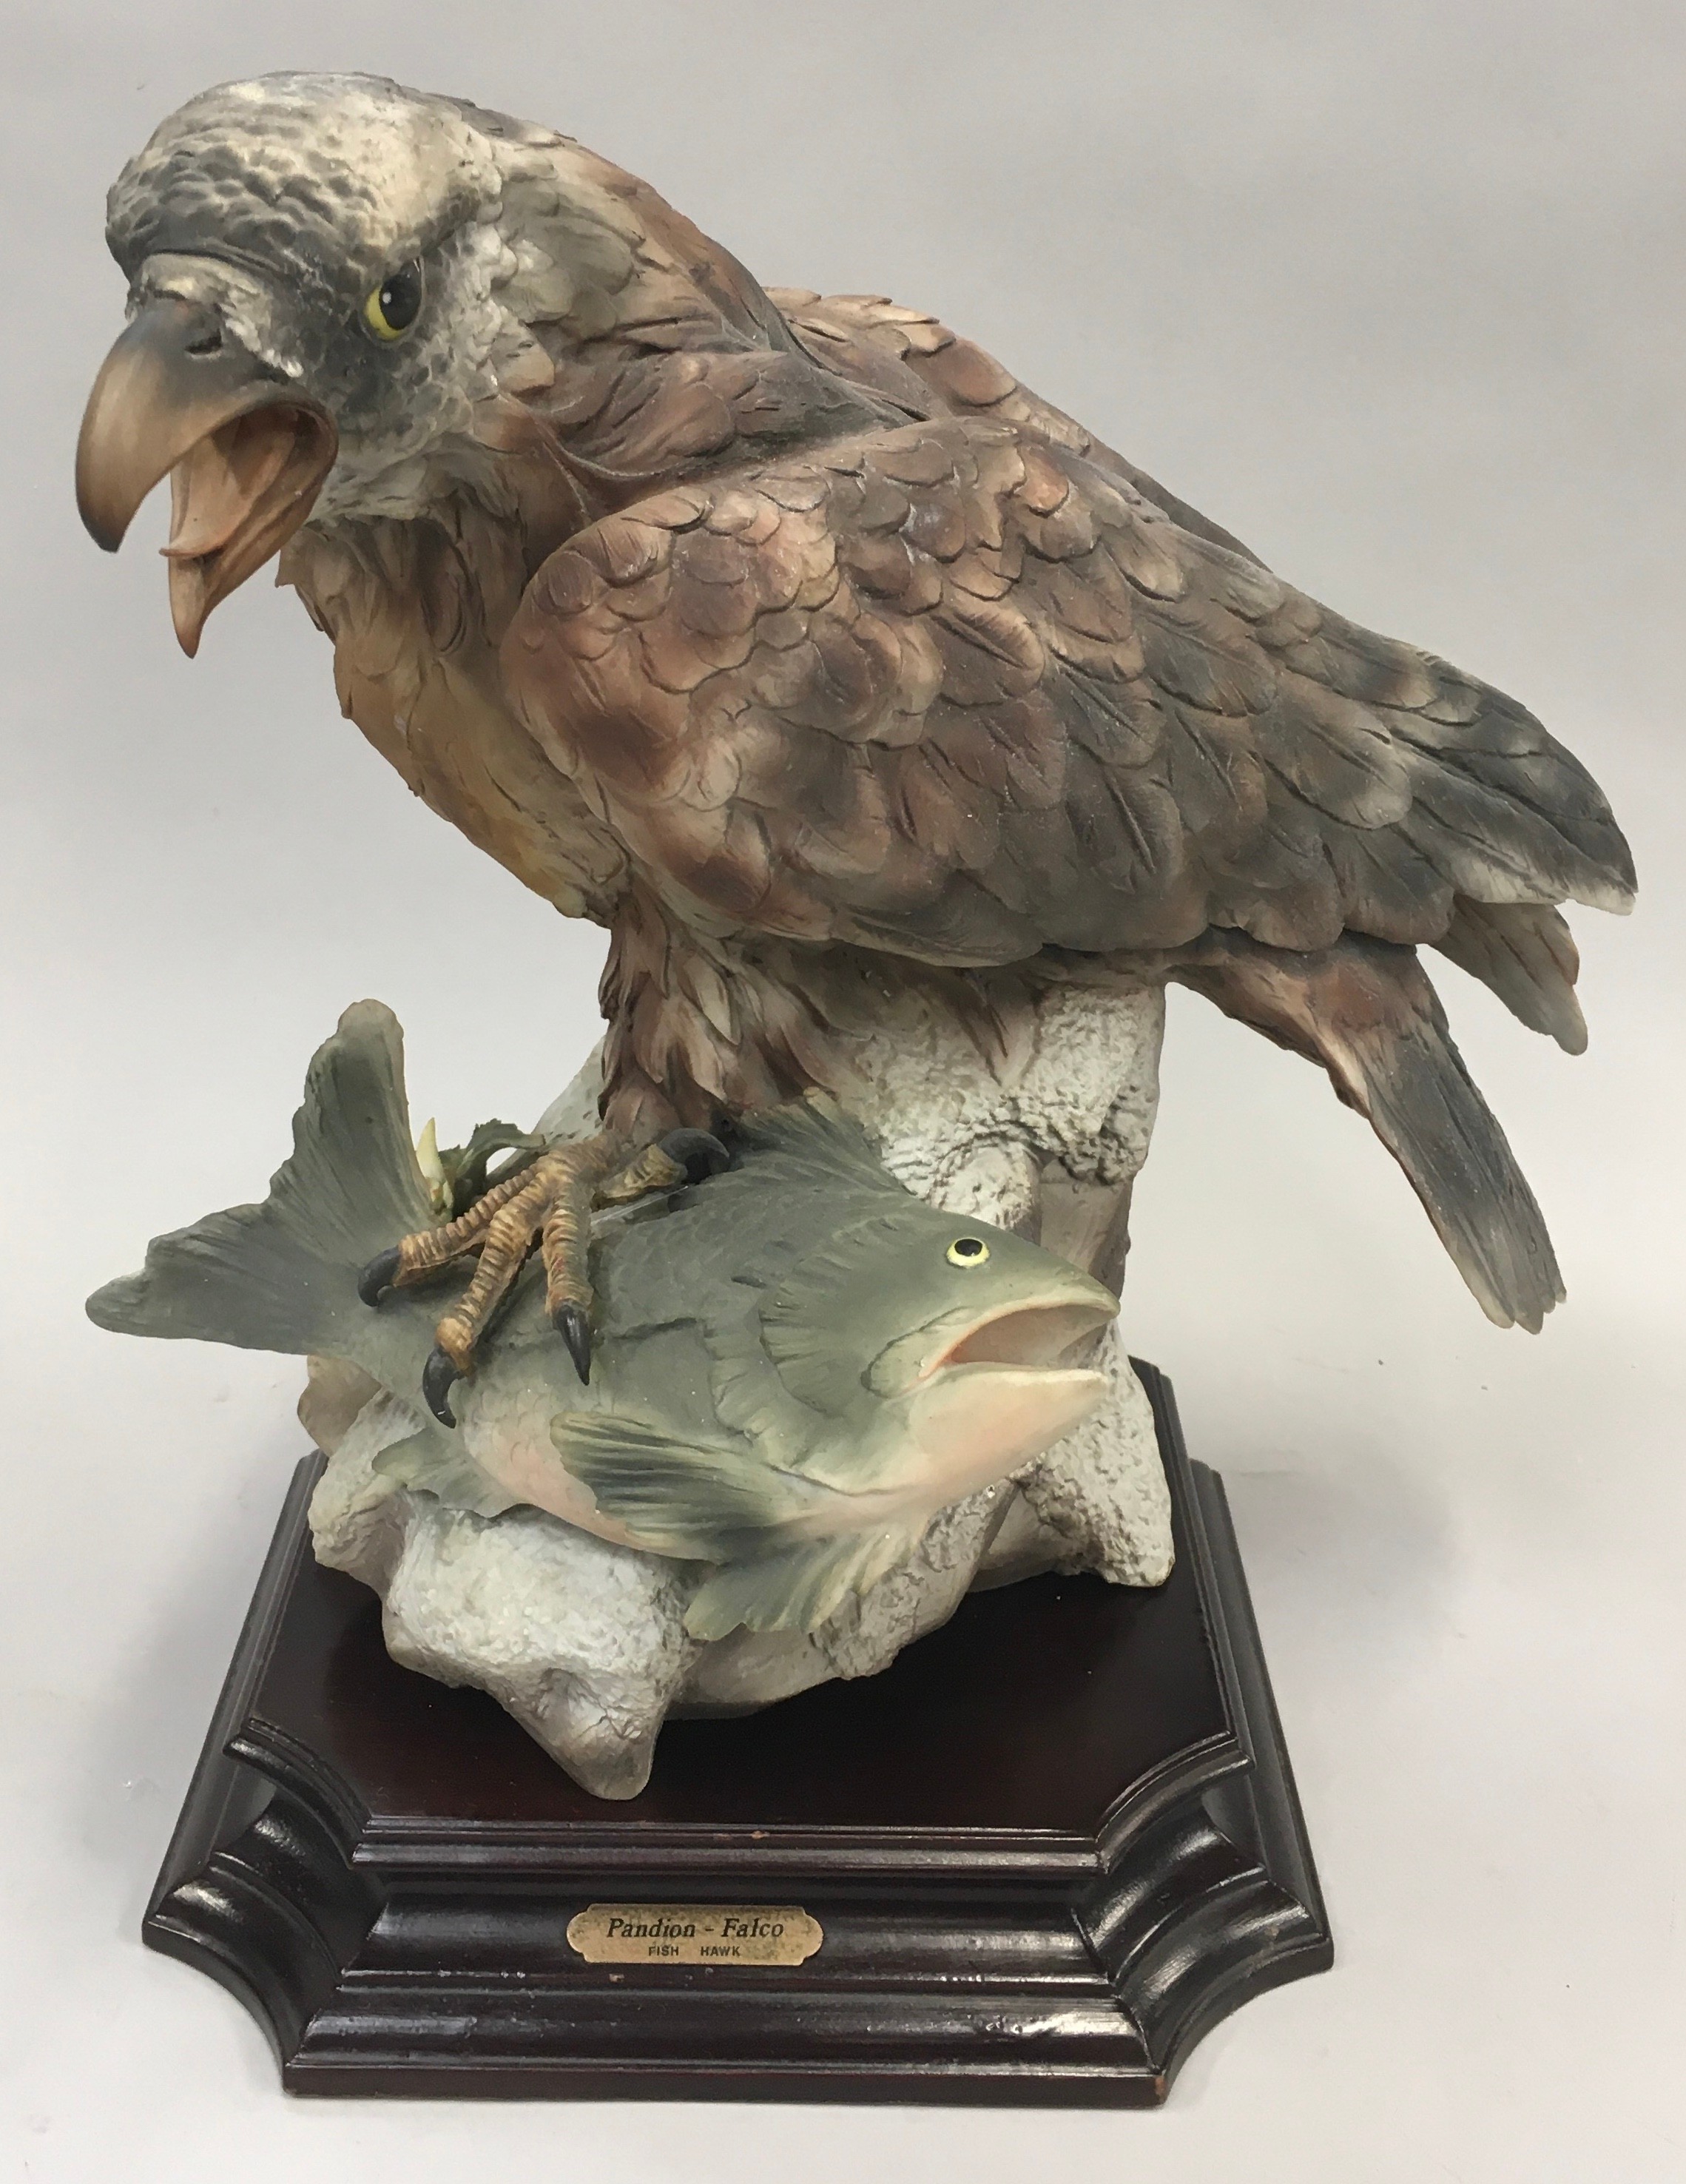 Bird of Prey model of a "Fish Hawk" on a wooden plinth